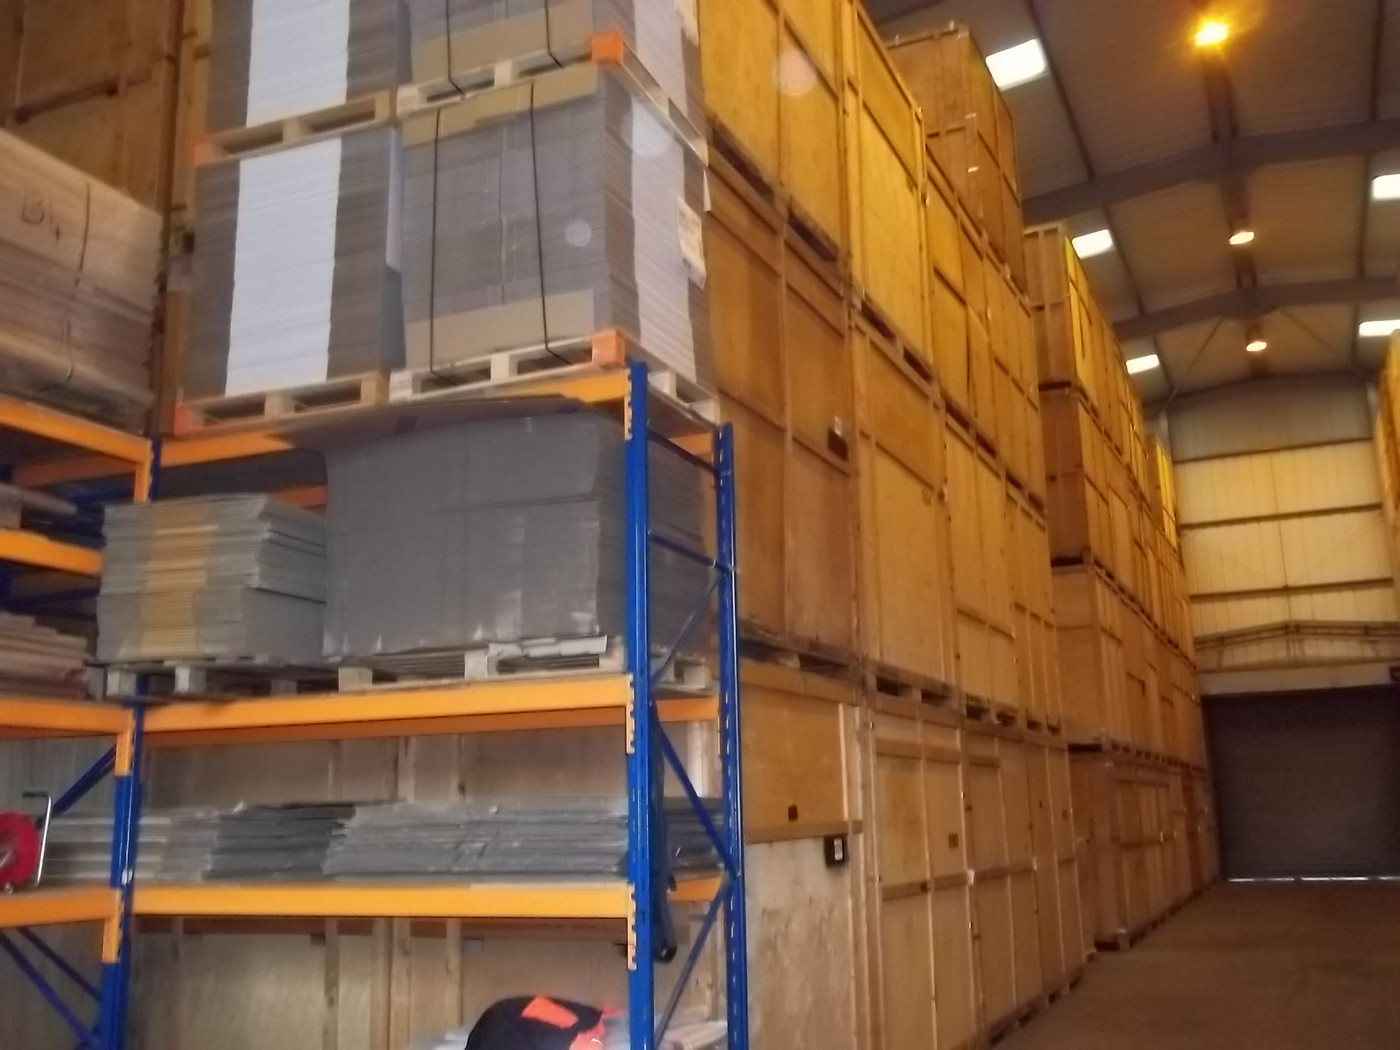 Storage in Warehouse